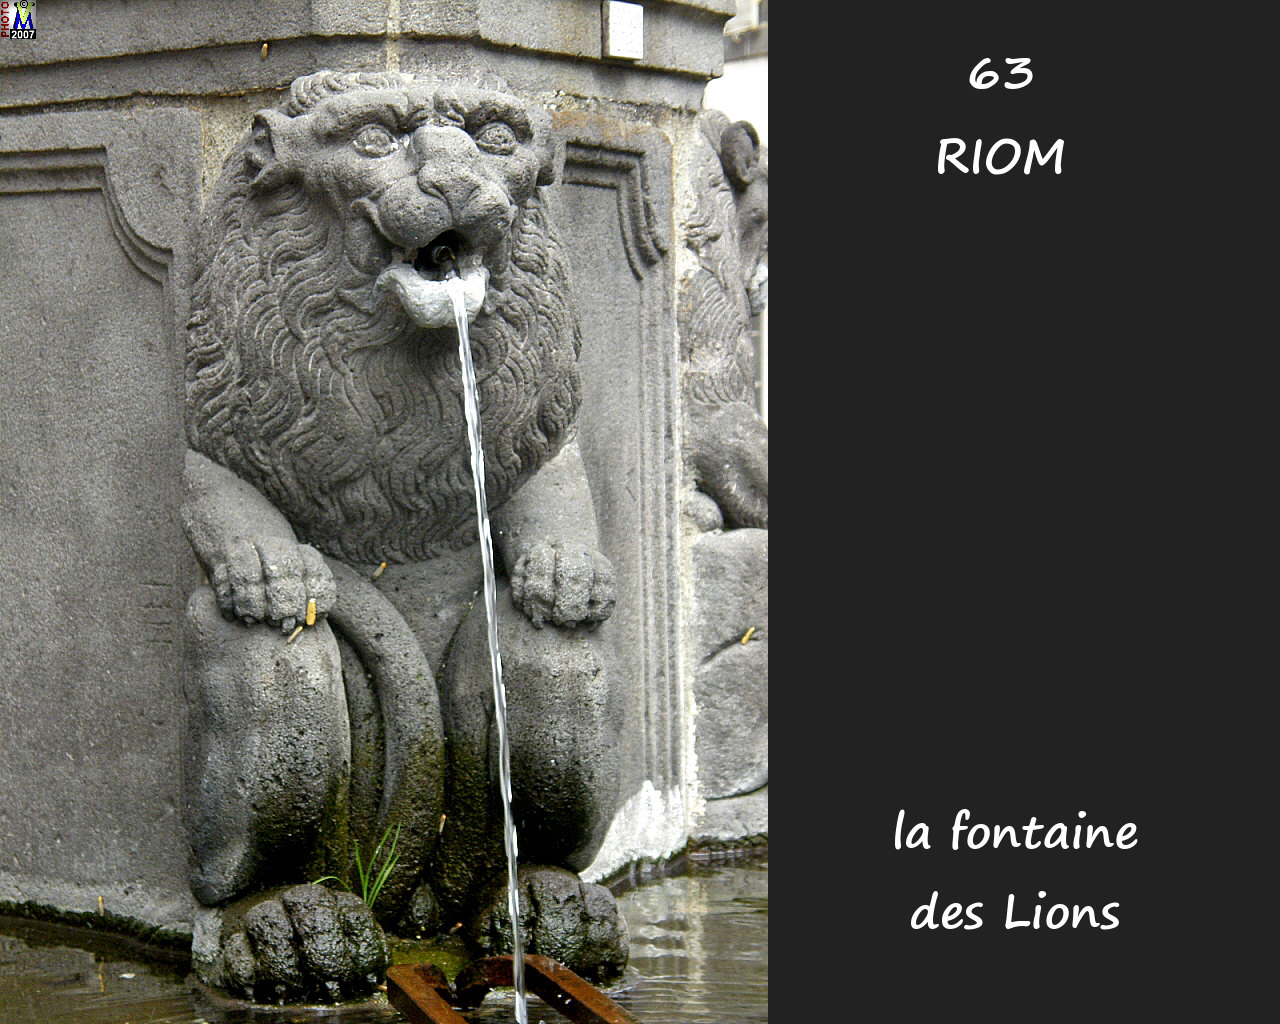 63RIOM_fontaine_lions_102.jpg